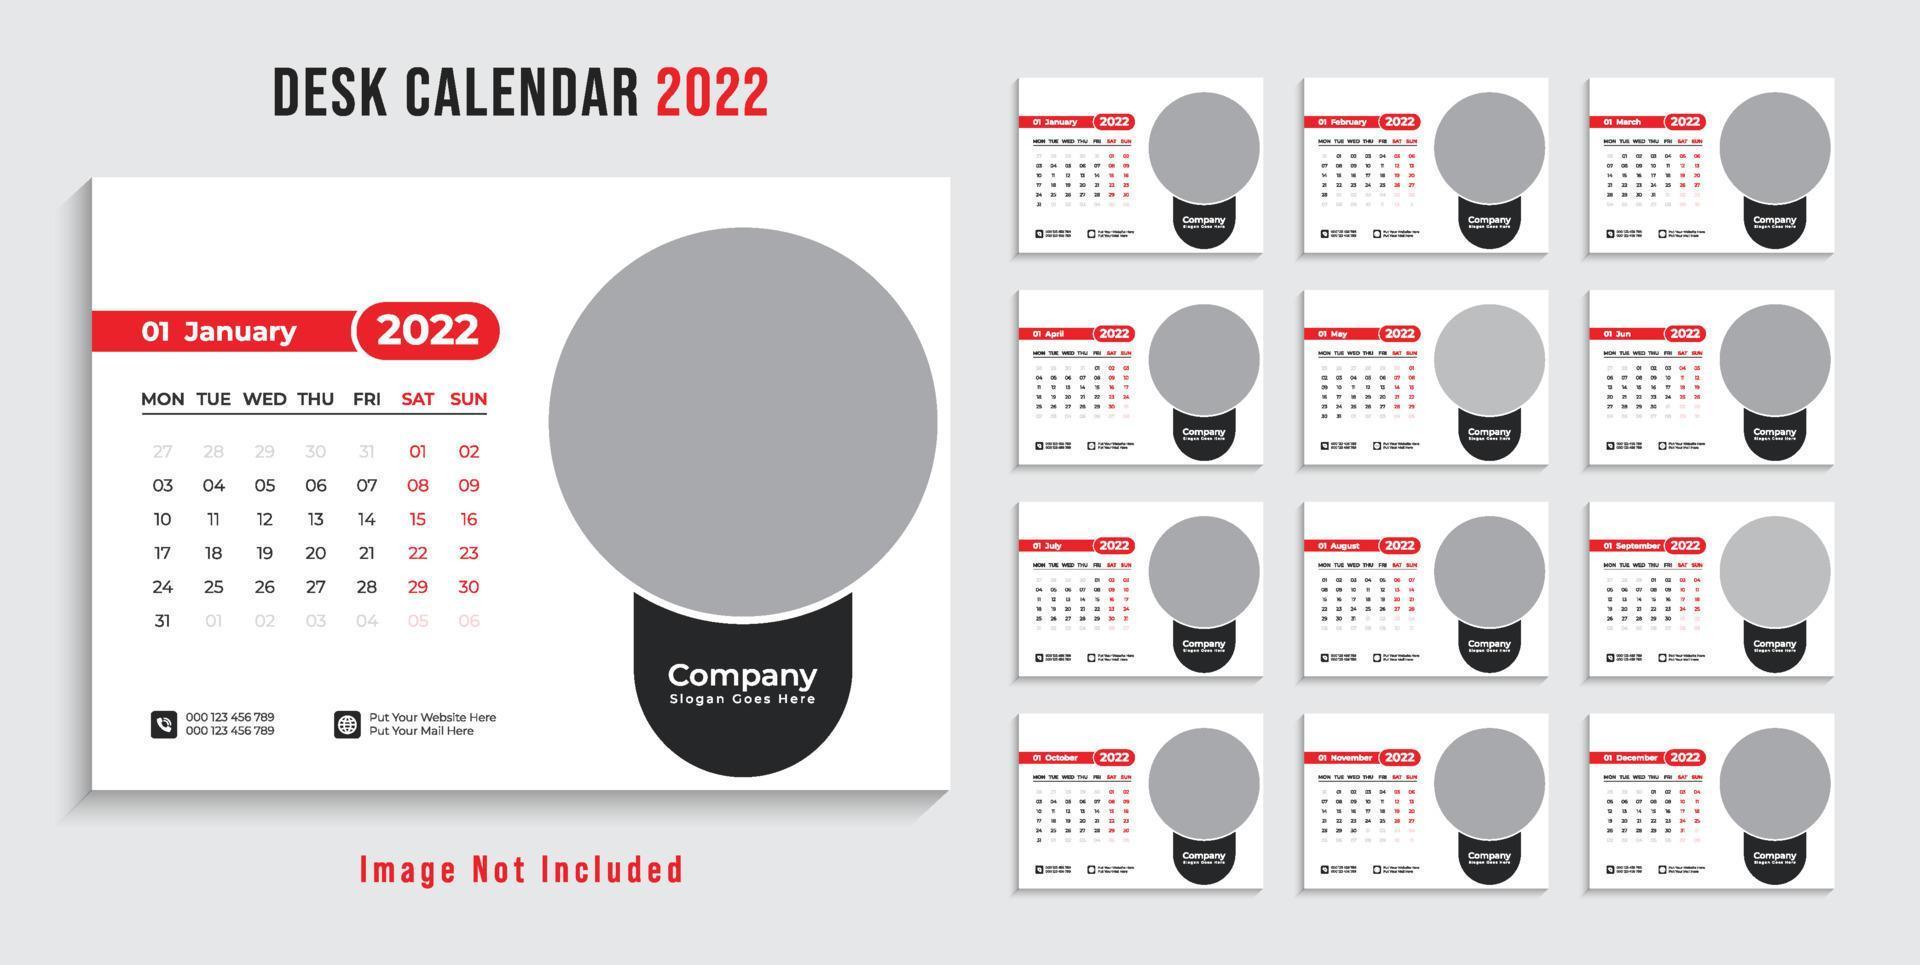 plantilla de diseño de calendario de escritorio 2022 moderno pro vector